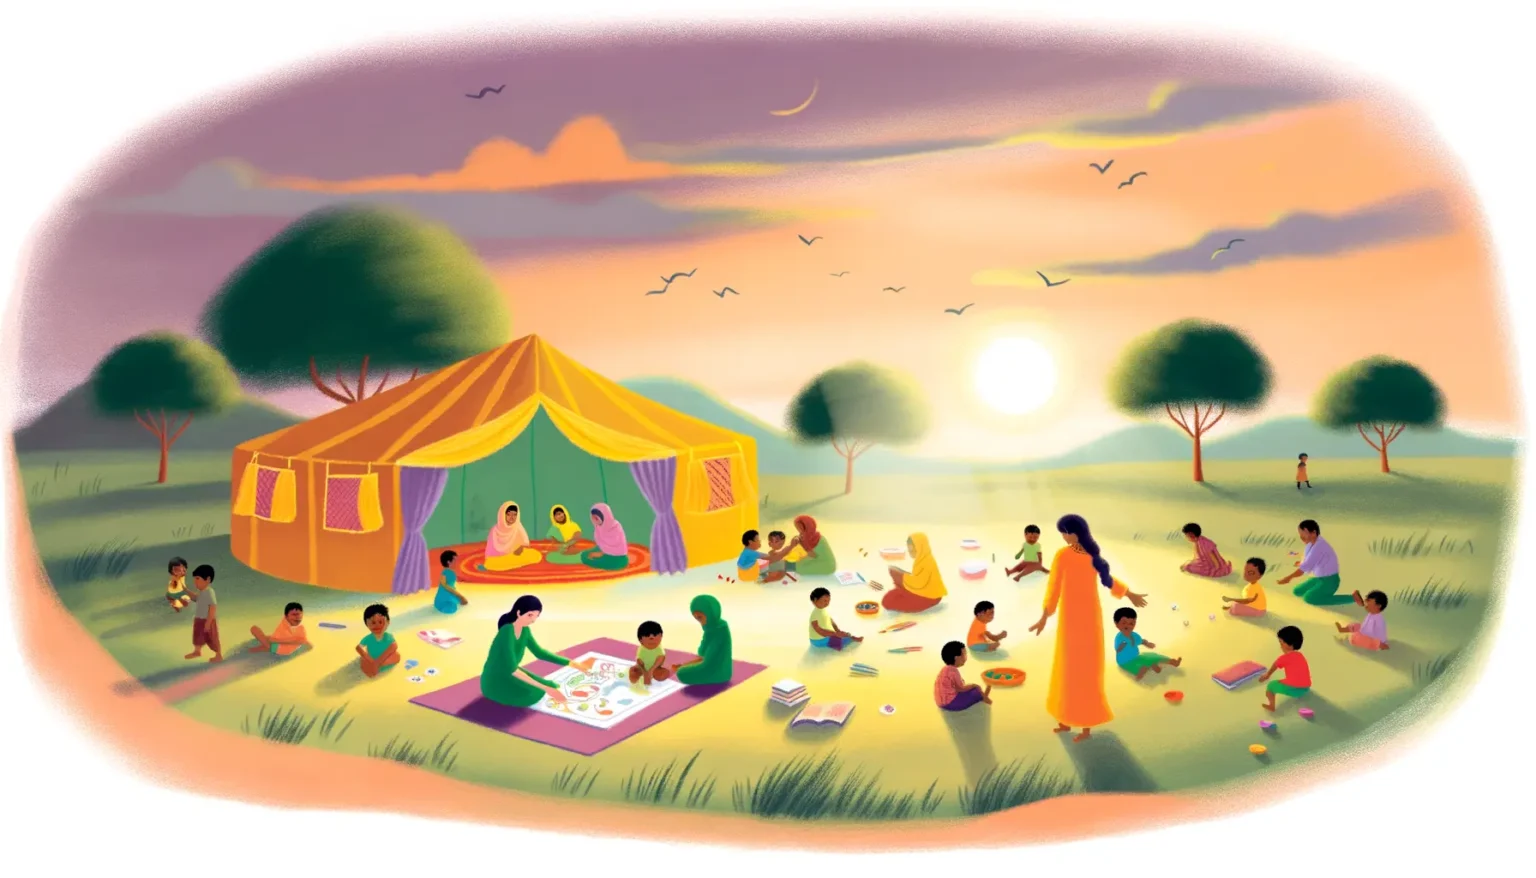 Eine illustrierte Szene eines Picknicks bei Sonnenuntergang mit mehreren Menschen, hauptsächlich Kindern, die auf dem Gras verteilt sind. Einige sitzen auf Decken und spielen Brettspiele, andere unterhalten sich oder beschäftigen sich mit Aktivitäten. Im Hintergrund befindet sich ein großes, farbenfrohes Zelt und der Himmel ist in warme Abendfarben getaucht, während Vögel am Himmel fliegen. Ein Gefühl von Gemeinschaft und Entspannung wird vermittelt.